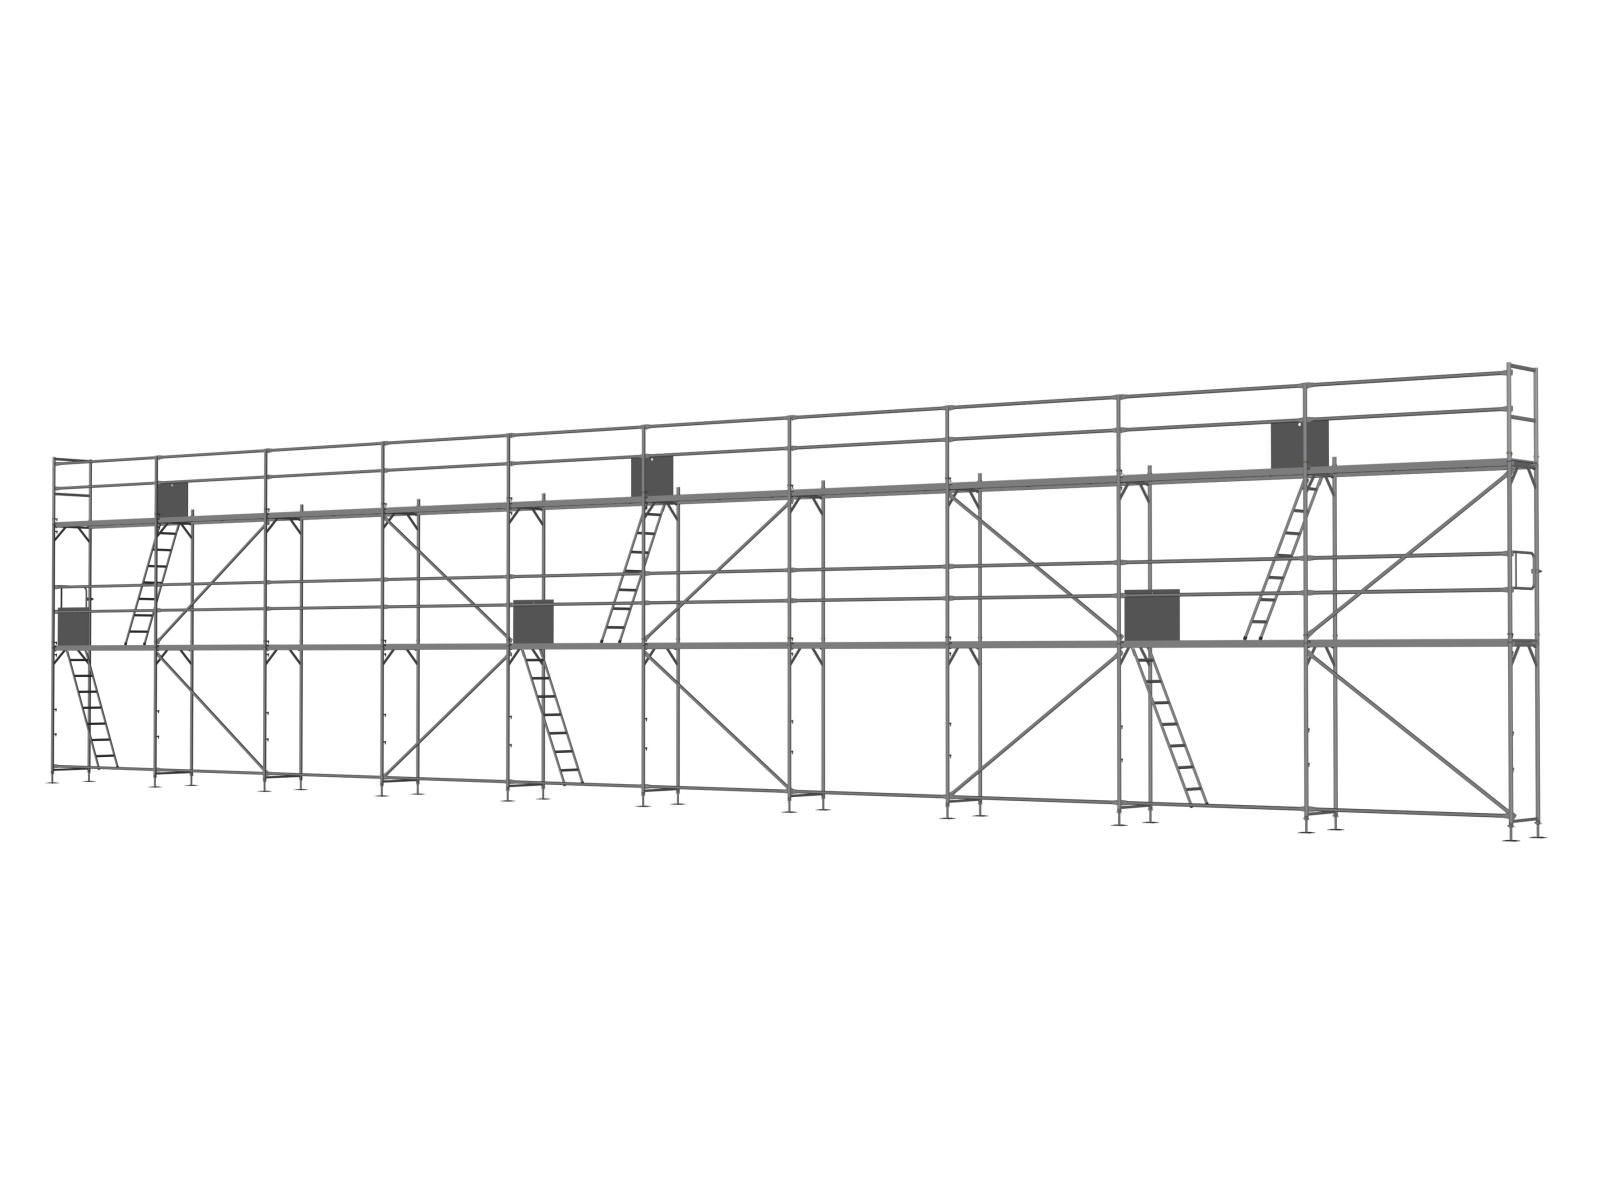 Stahl Traufseitengerüst 150 qm - 2,5 m Felder - 25 m lang - 6 m Arbeitshöhe - Basis-Gerüst inkl. Aufstieg & Befestigung